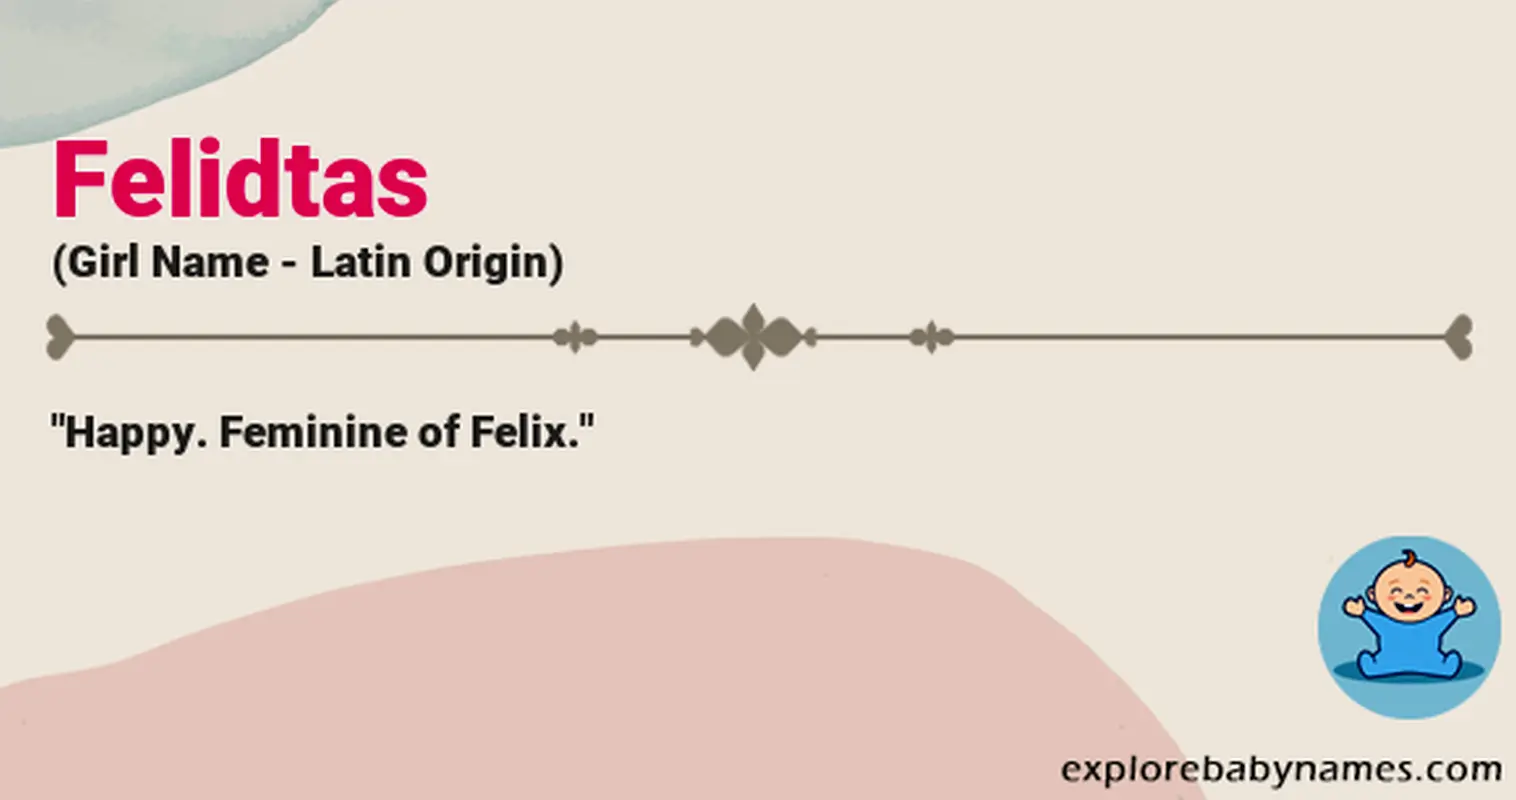 Meaning of Felidtas